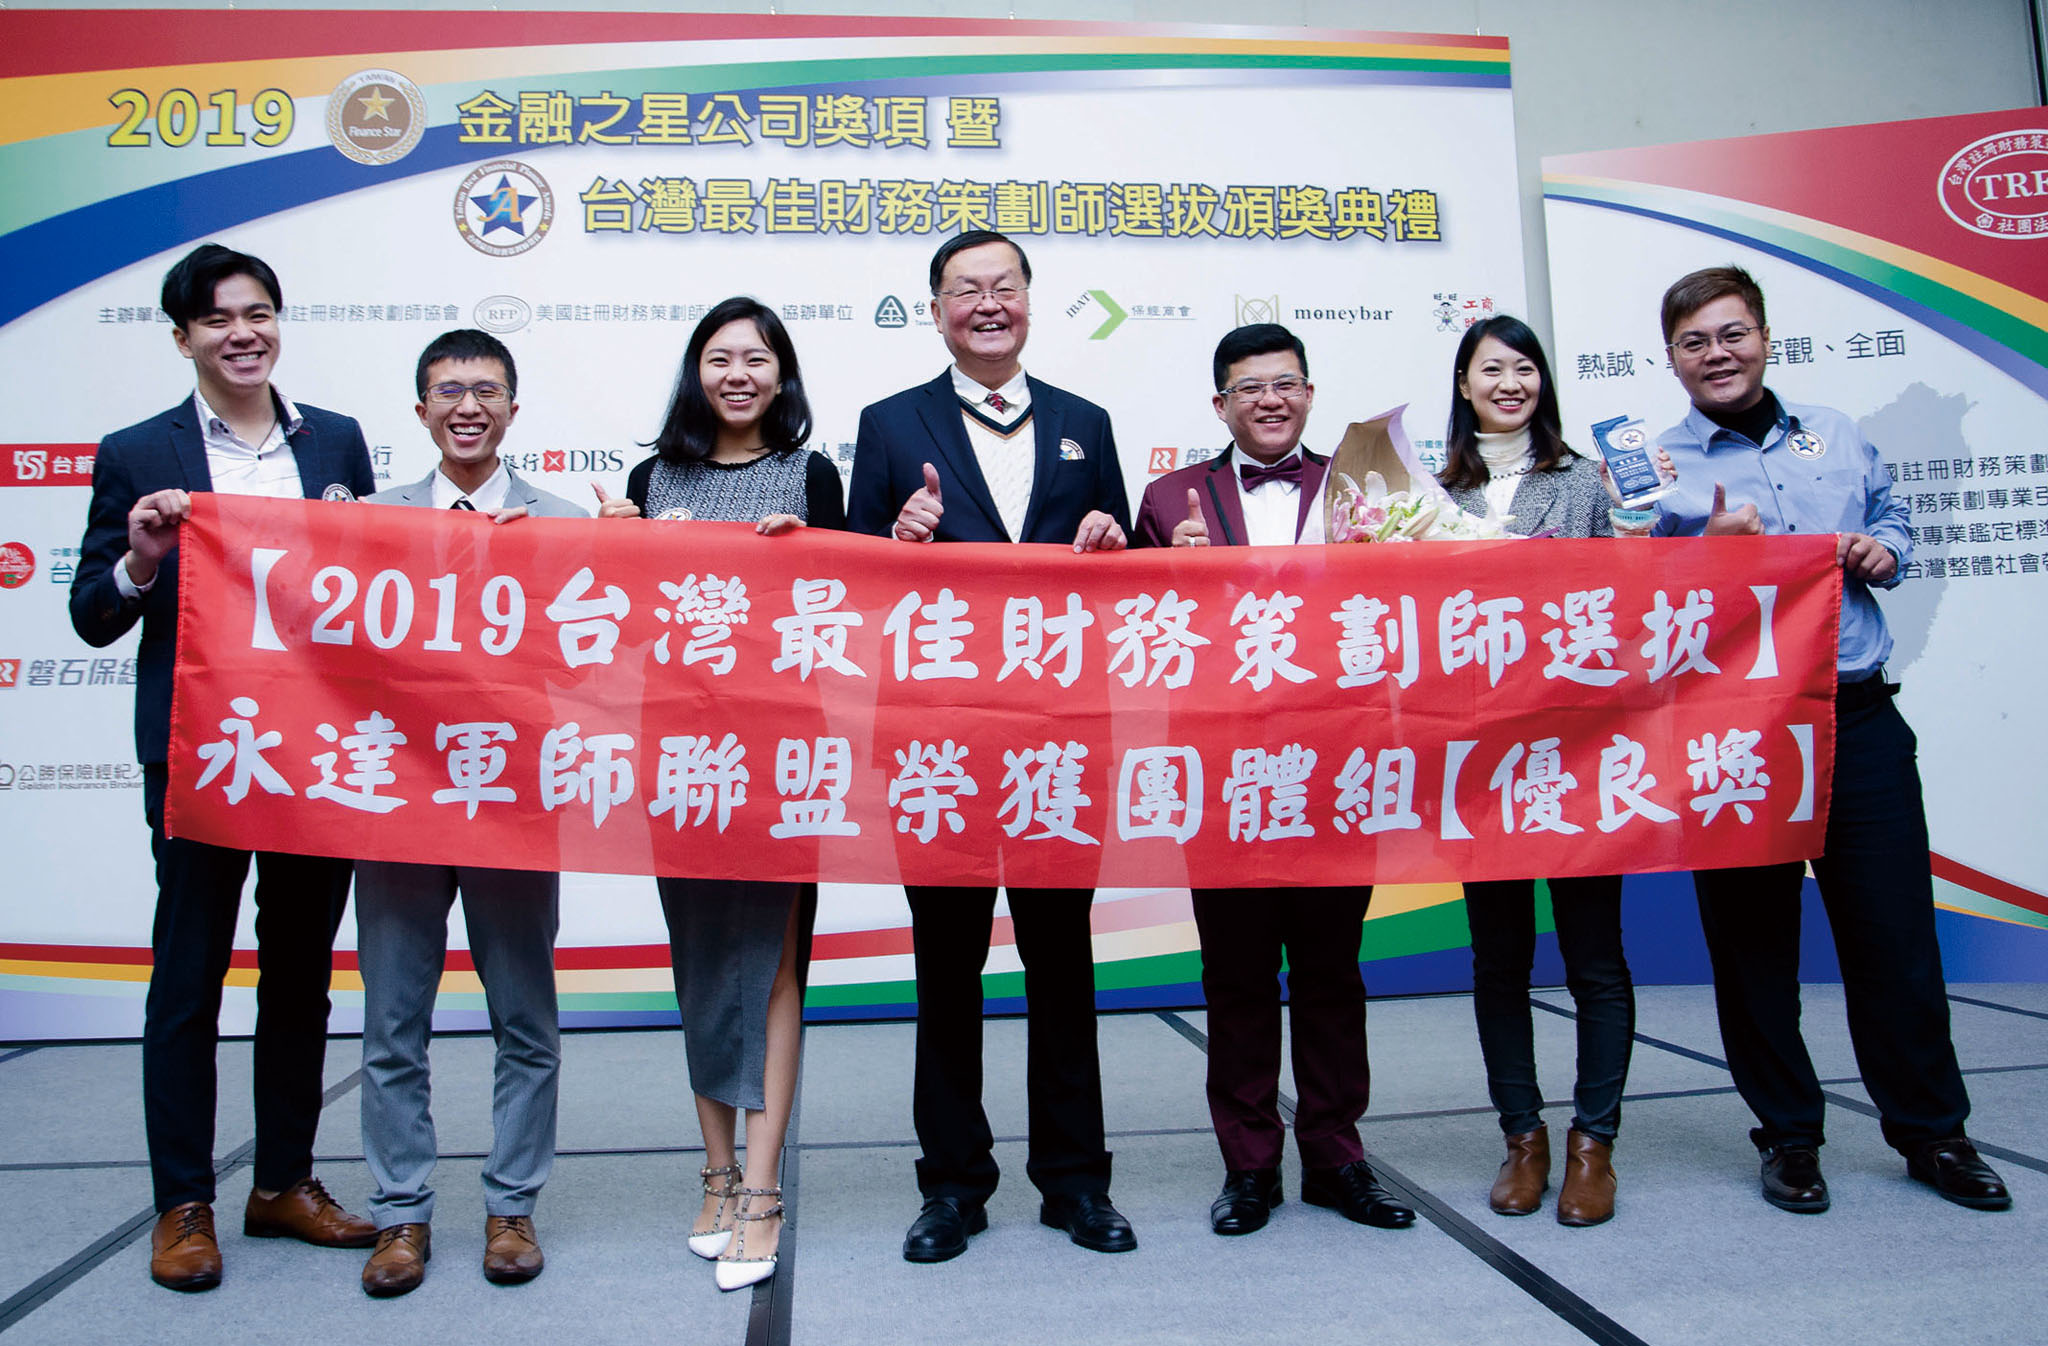 永達保經軍師聯盟團隊榮獲二○一九台灣最佳財務策劃師團體組優良獎。